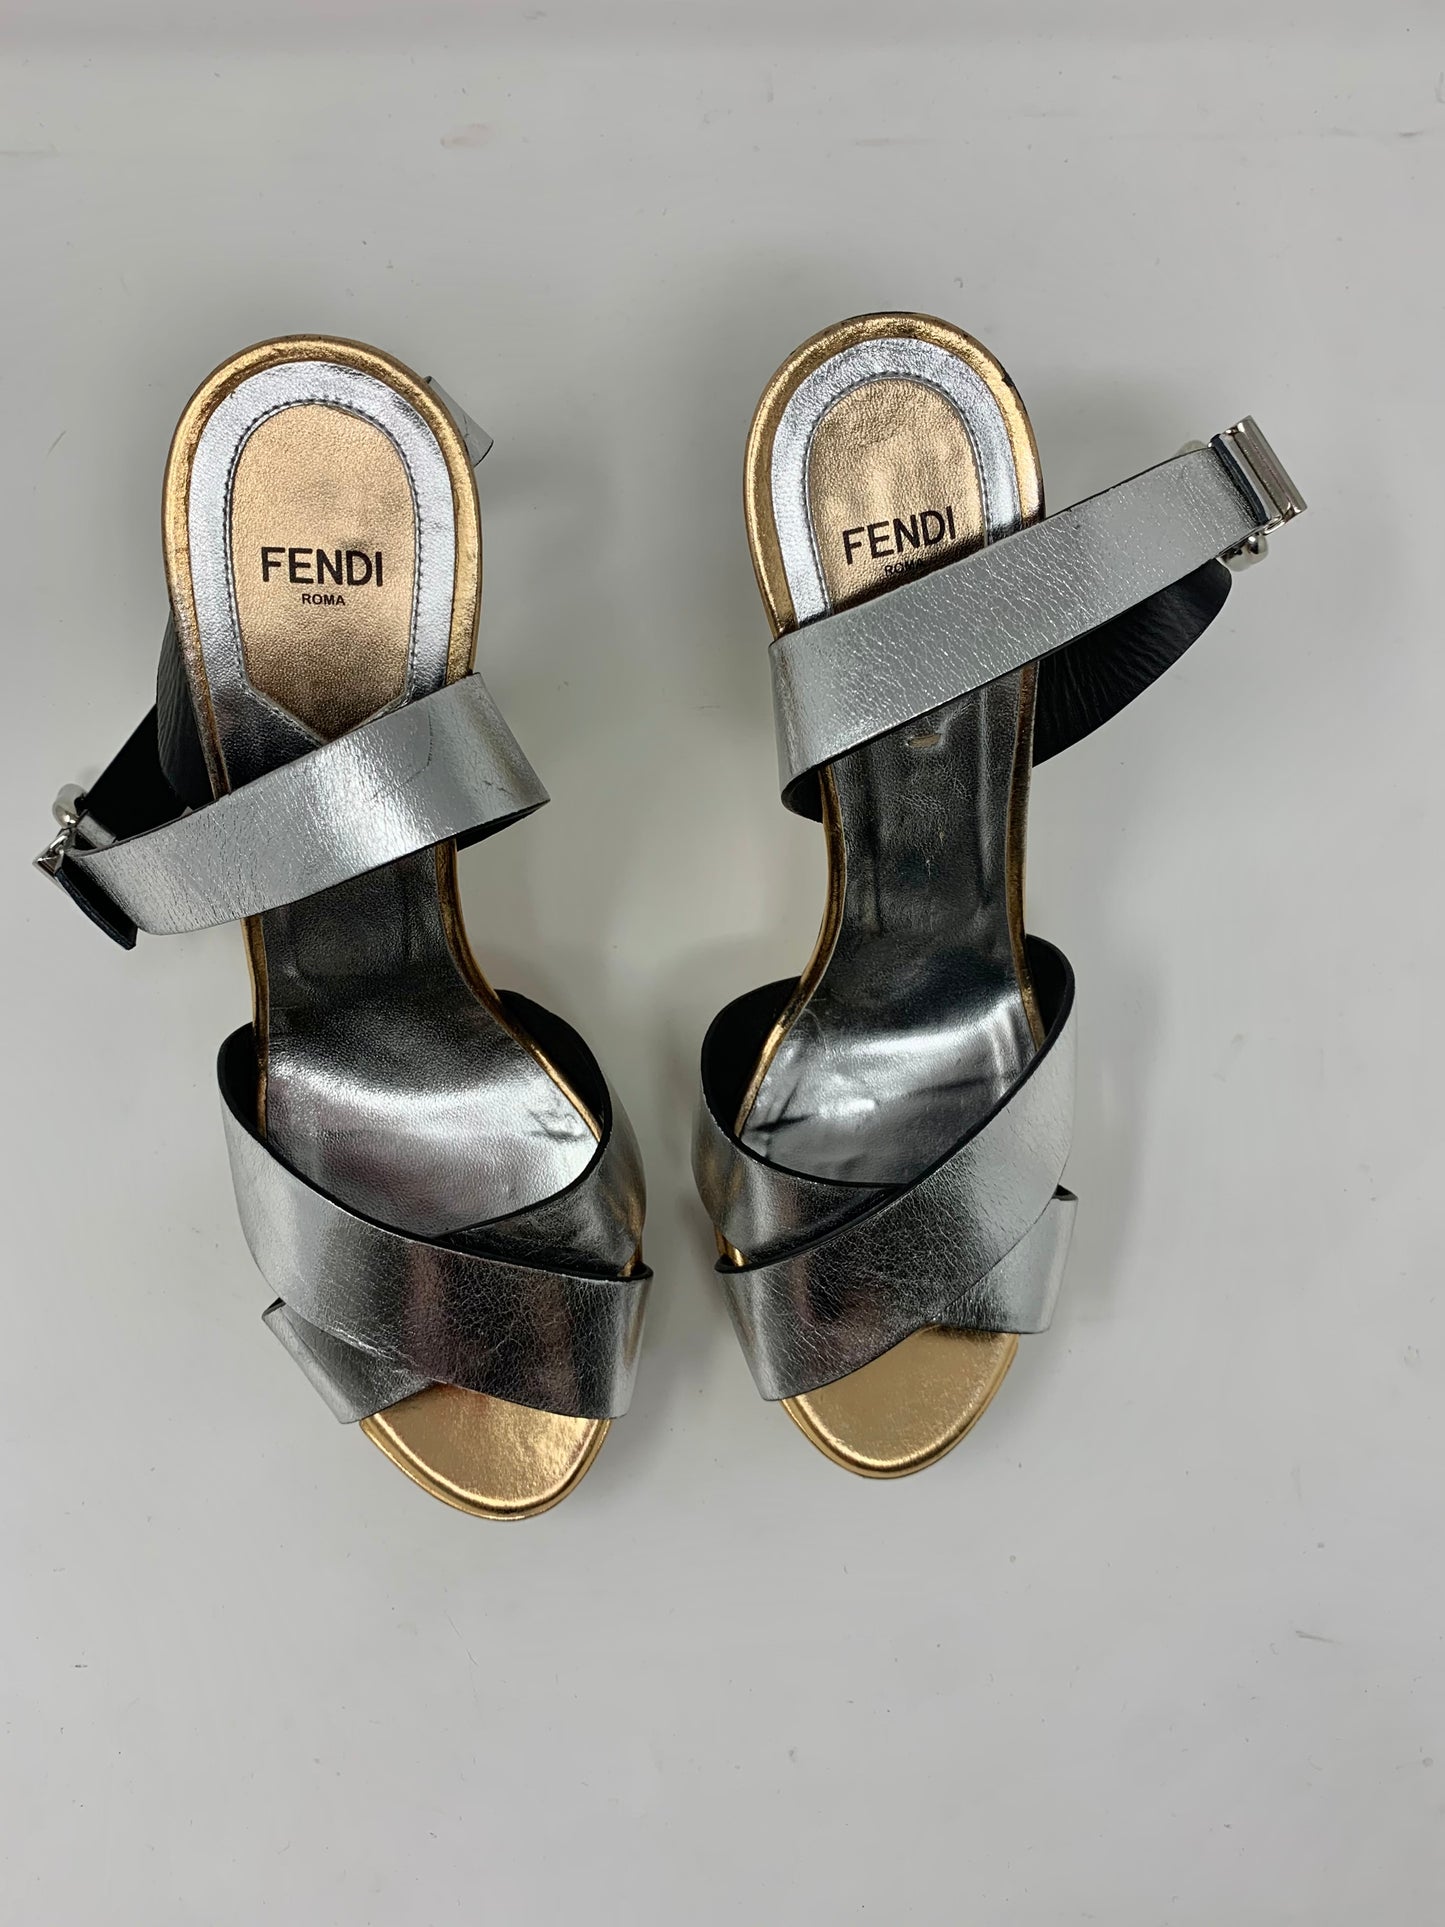 Fendi Pre-loved High Heels